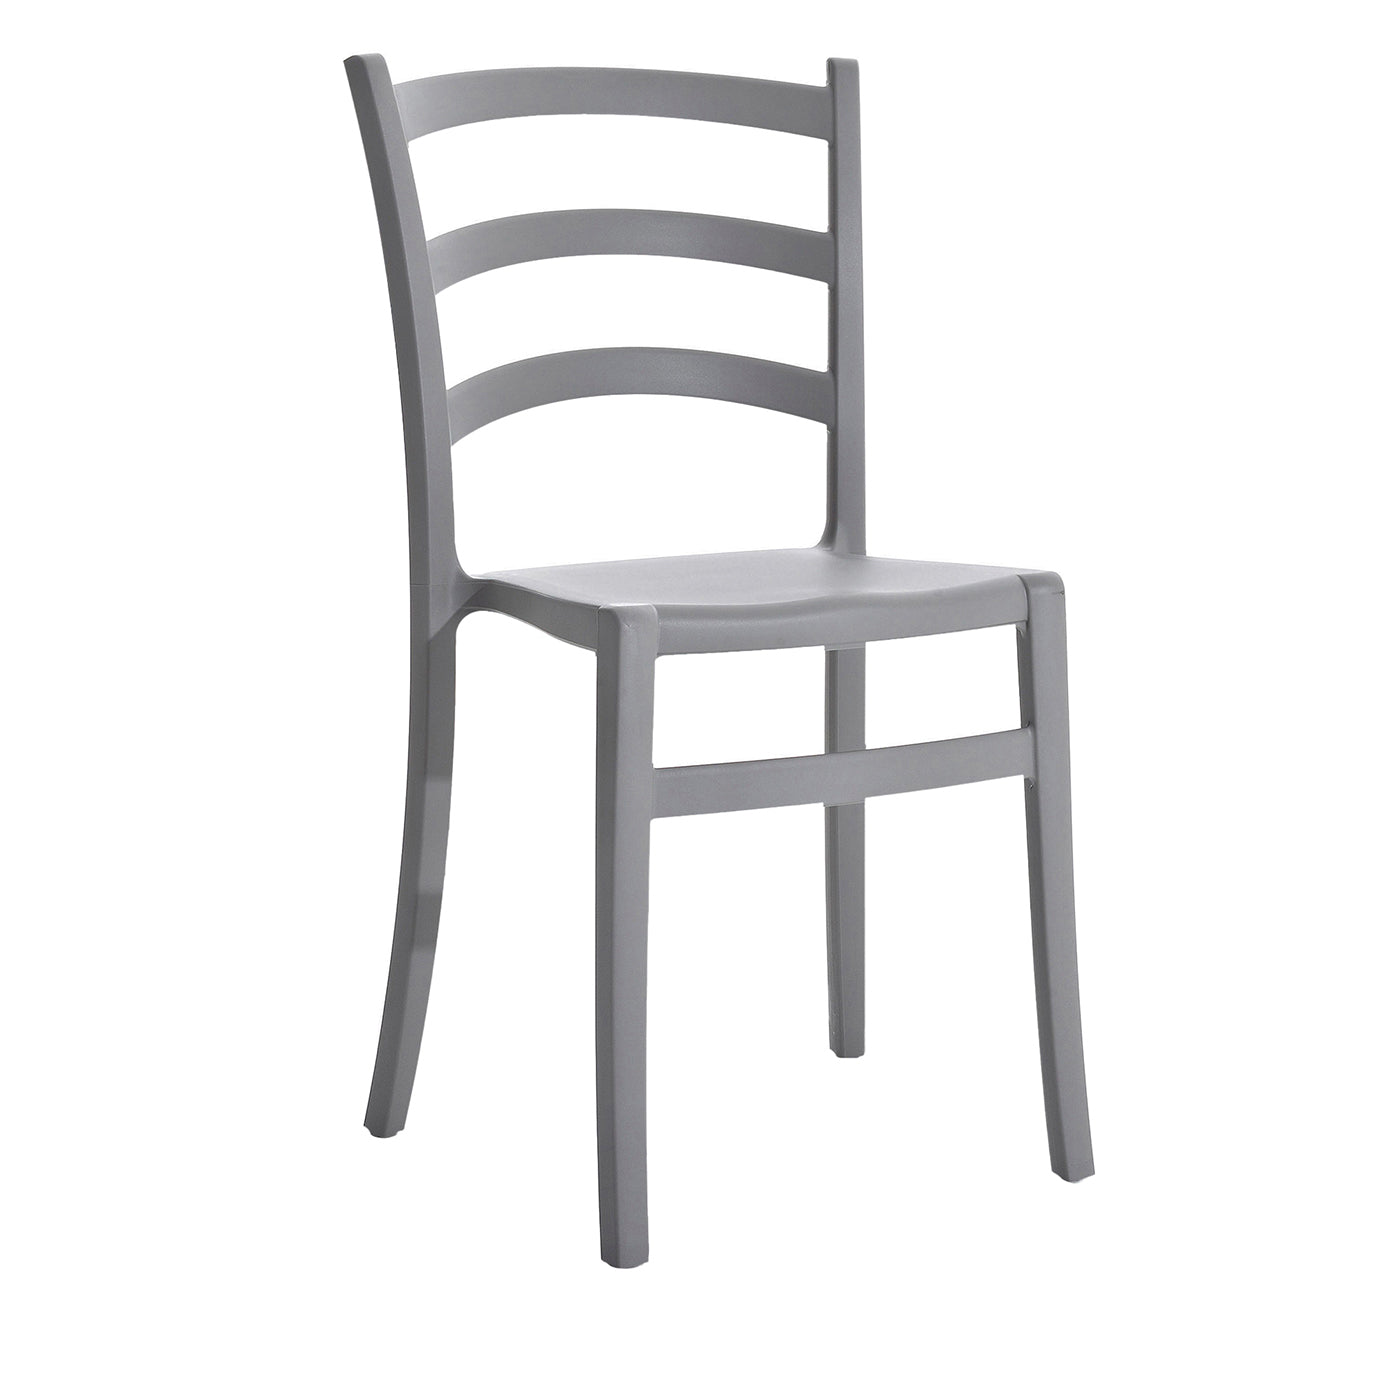 Set of 2 Italia 150 Gray Chairs - Main view